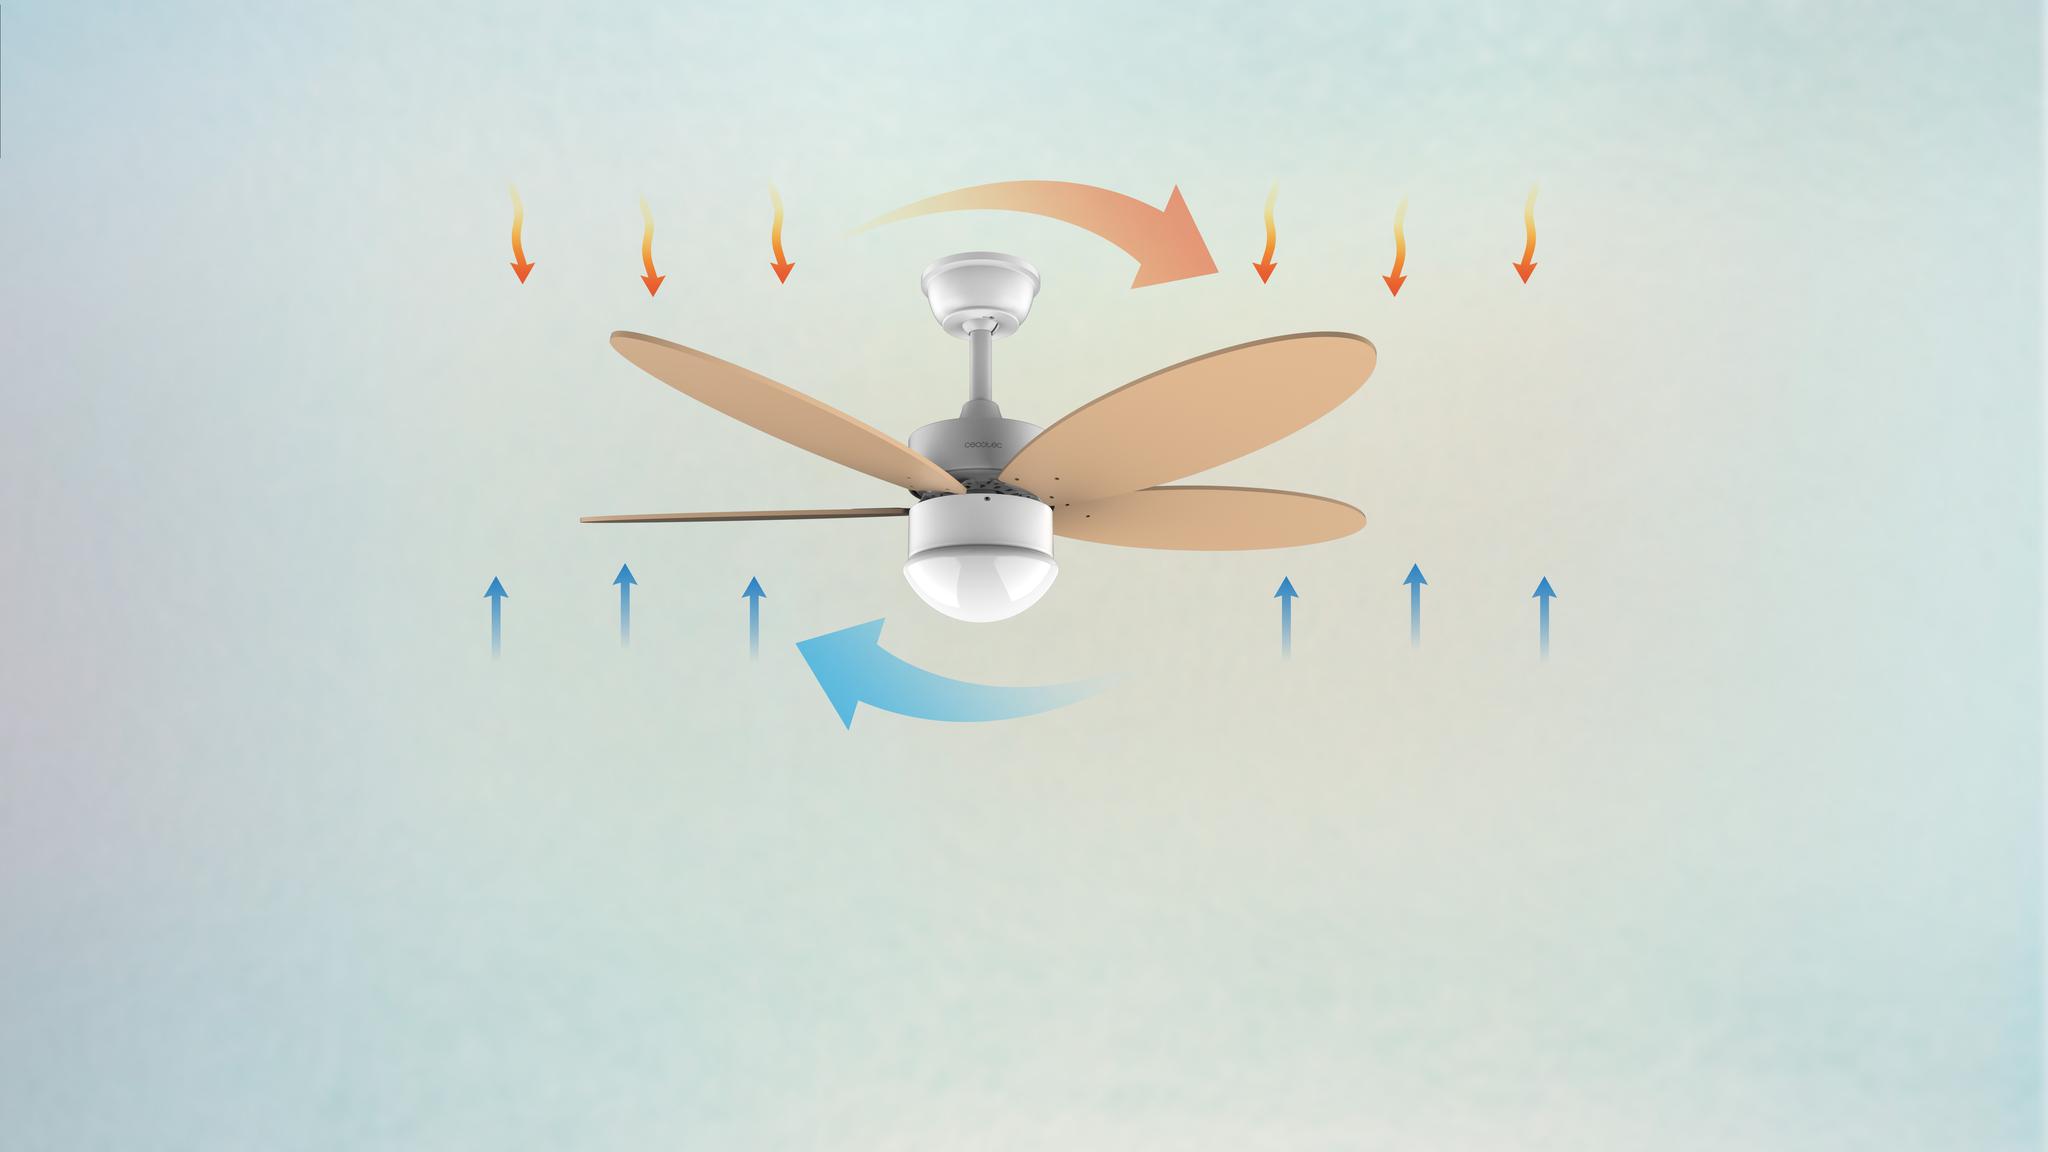 El ventilador será tu aliado los 365 días del año gracias a su sistema de inversión de giro que consigue una agradable brisa fresca en verano y aire cálido en invierno.